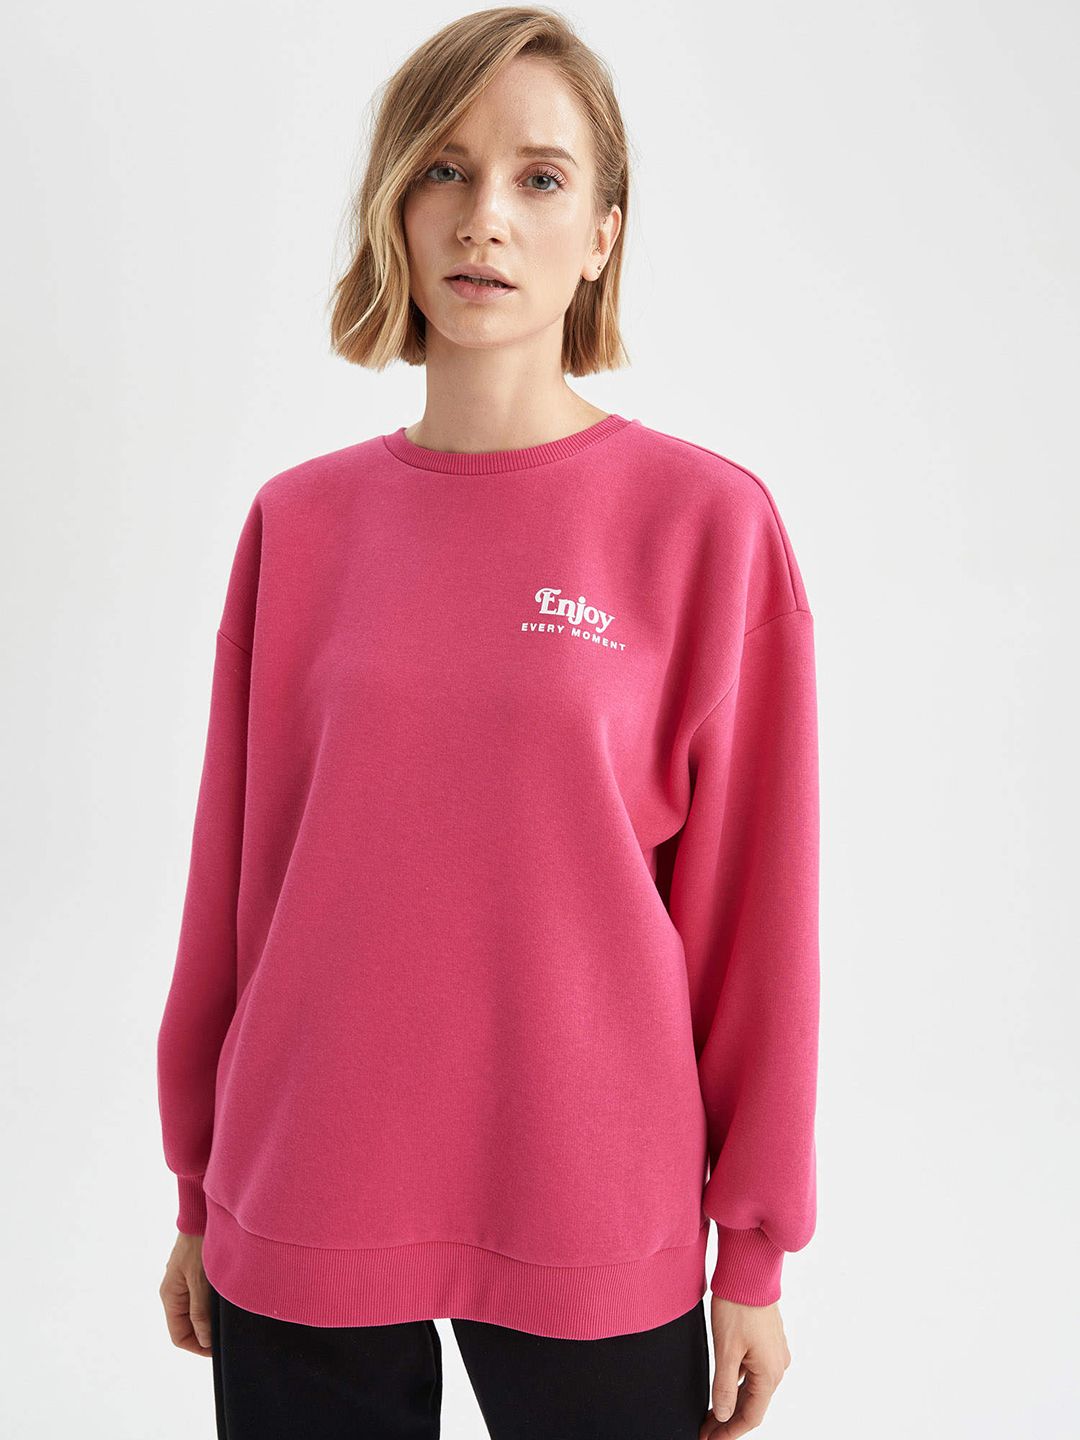 DeFacto Women Pink Solid Sweatshirt Price in India